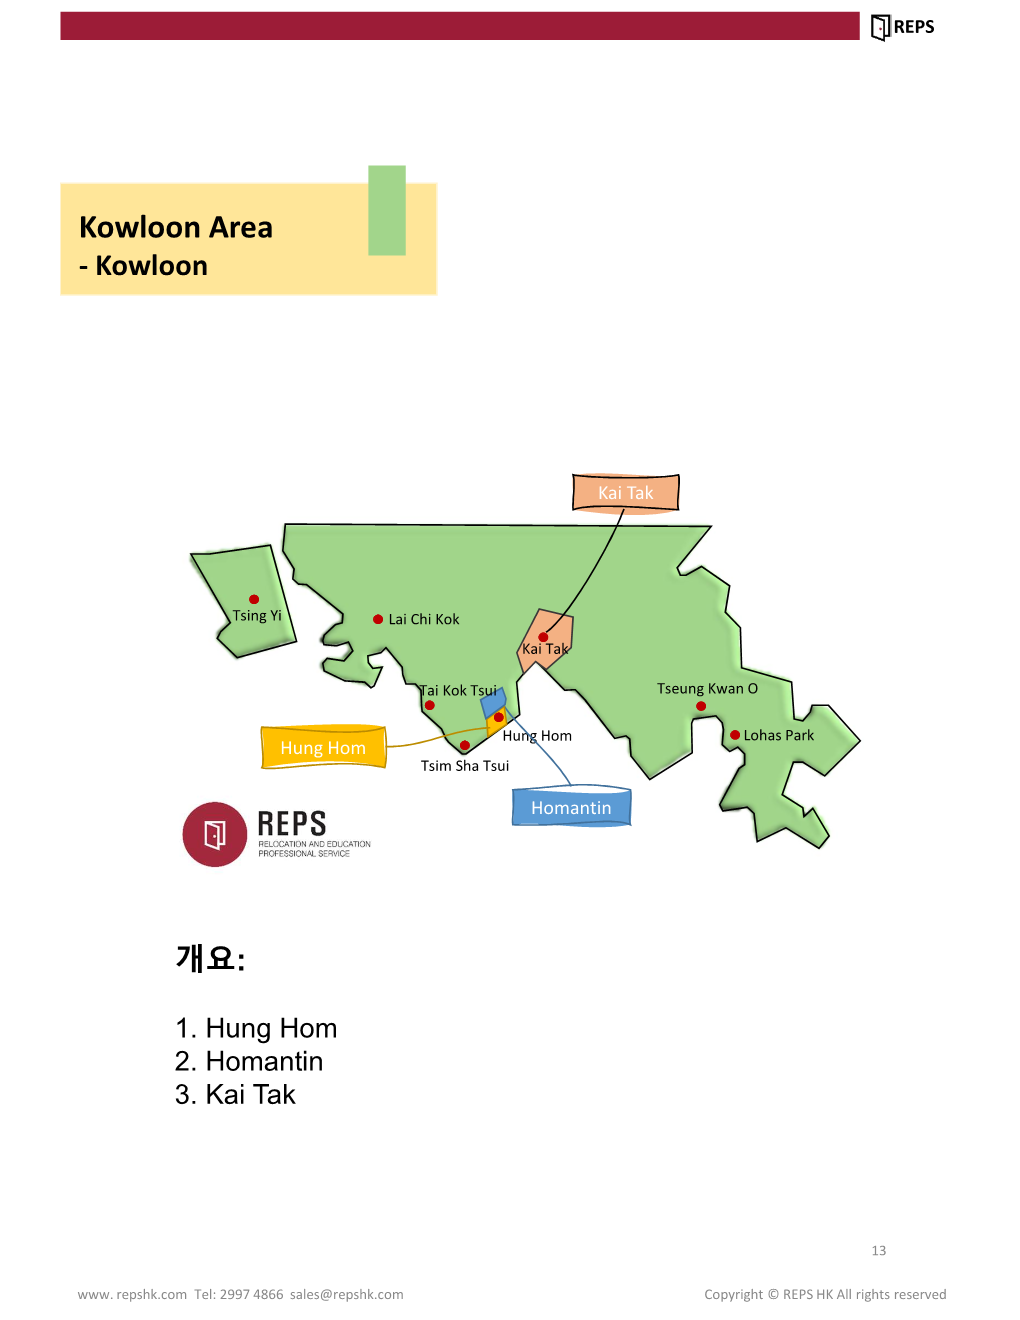 Kowloon Area - Kowloon